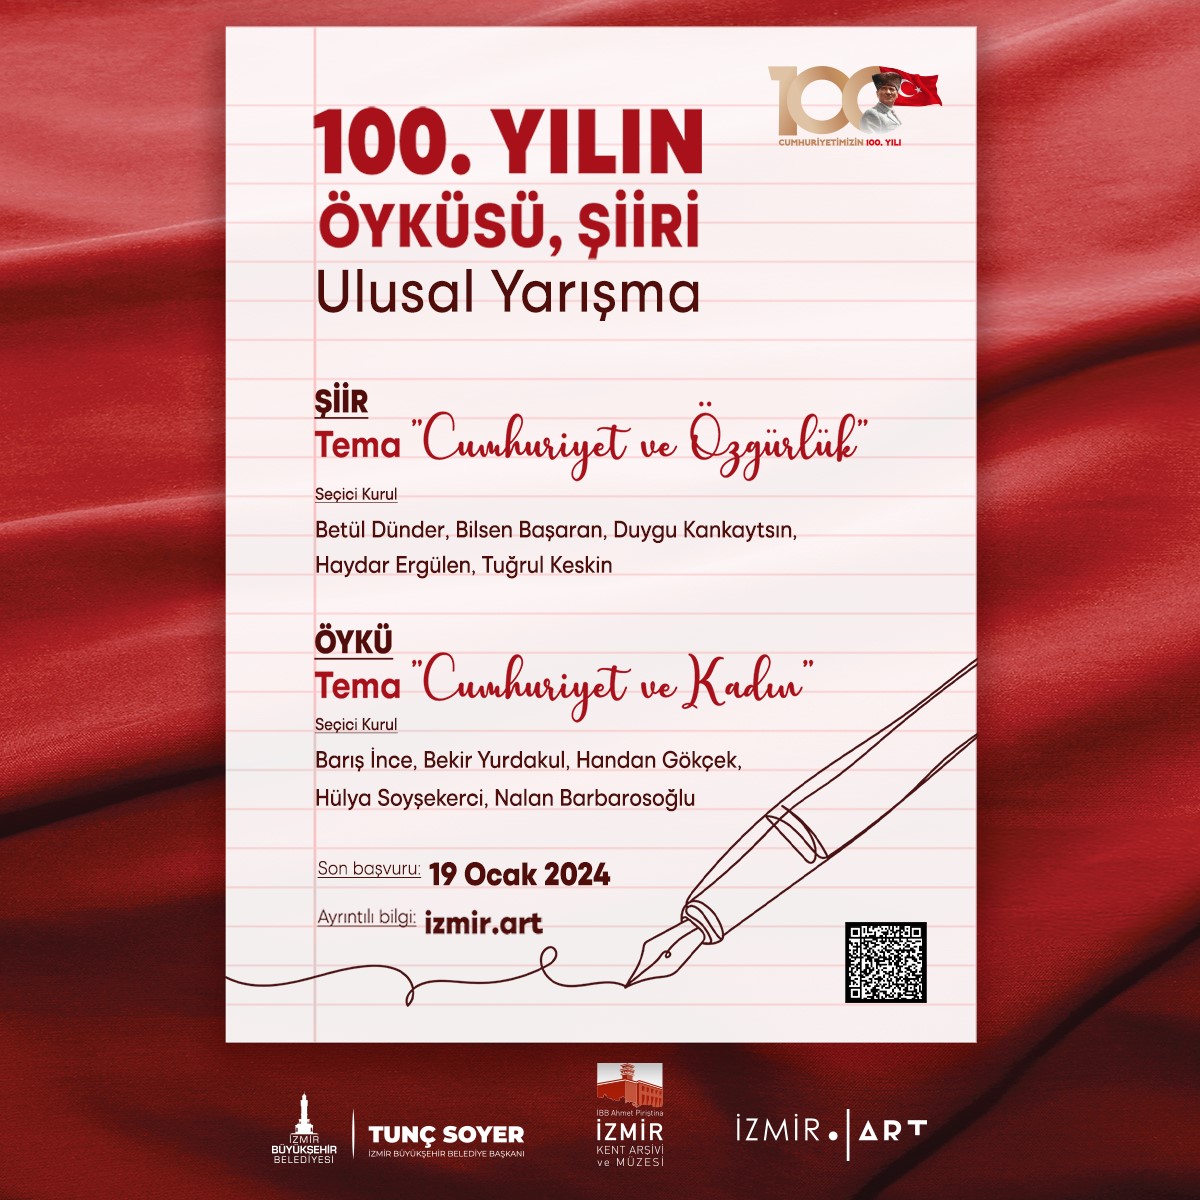 İzmir’de “100. Yılın Öyküsü, Şiiri” yarışmasına başvurular devam ediyor